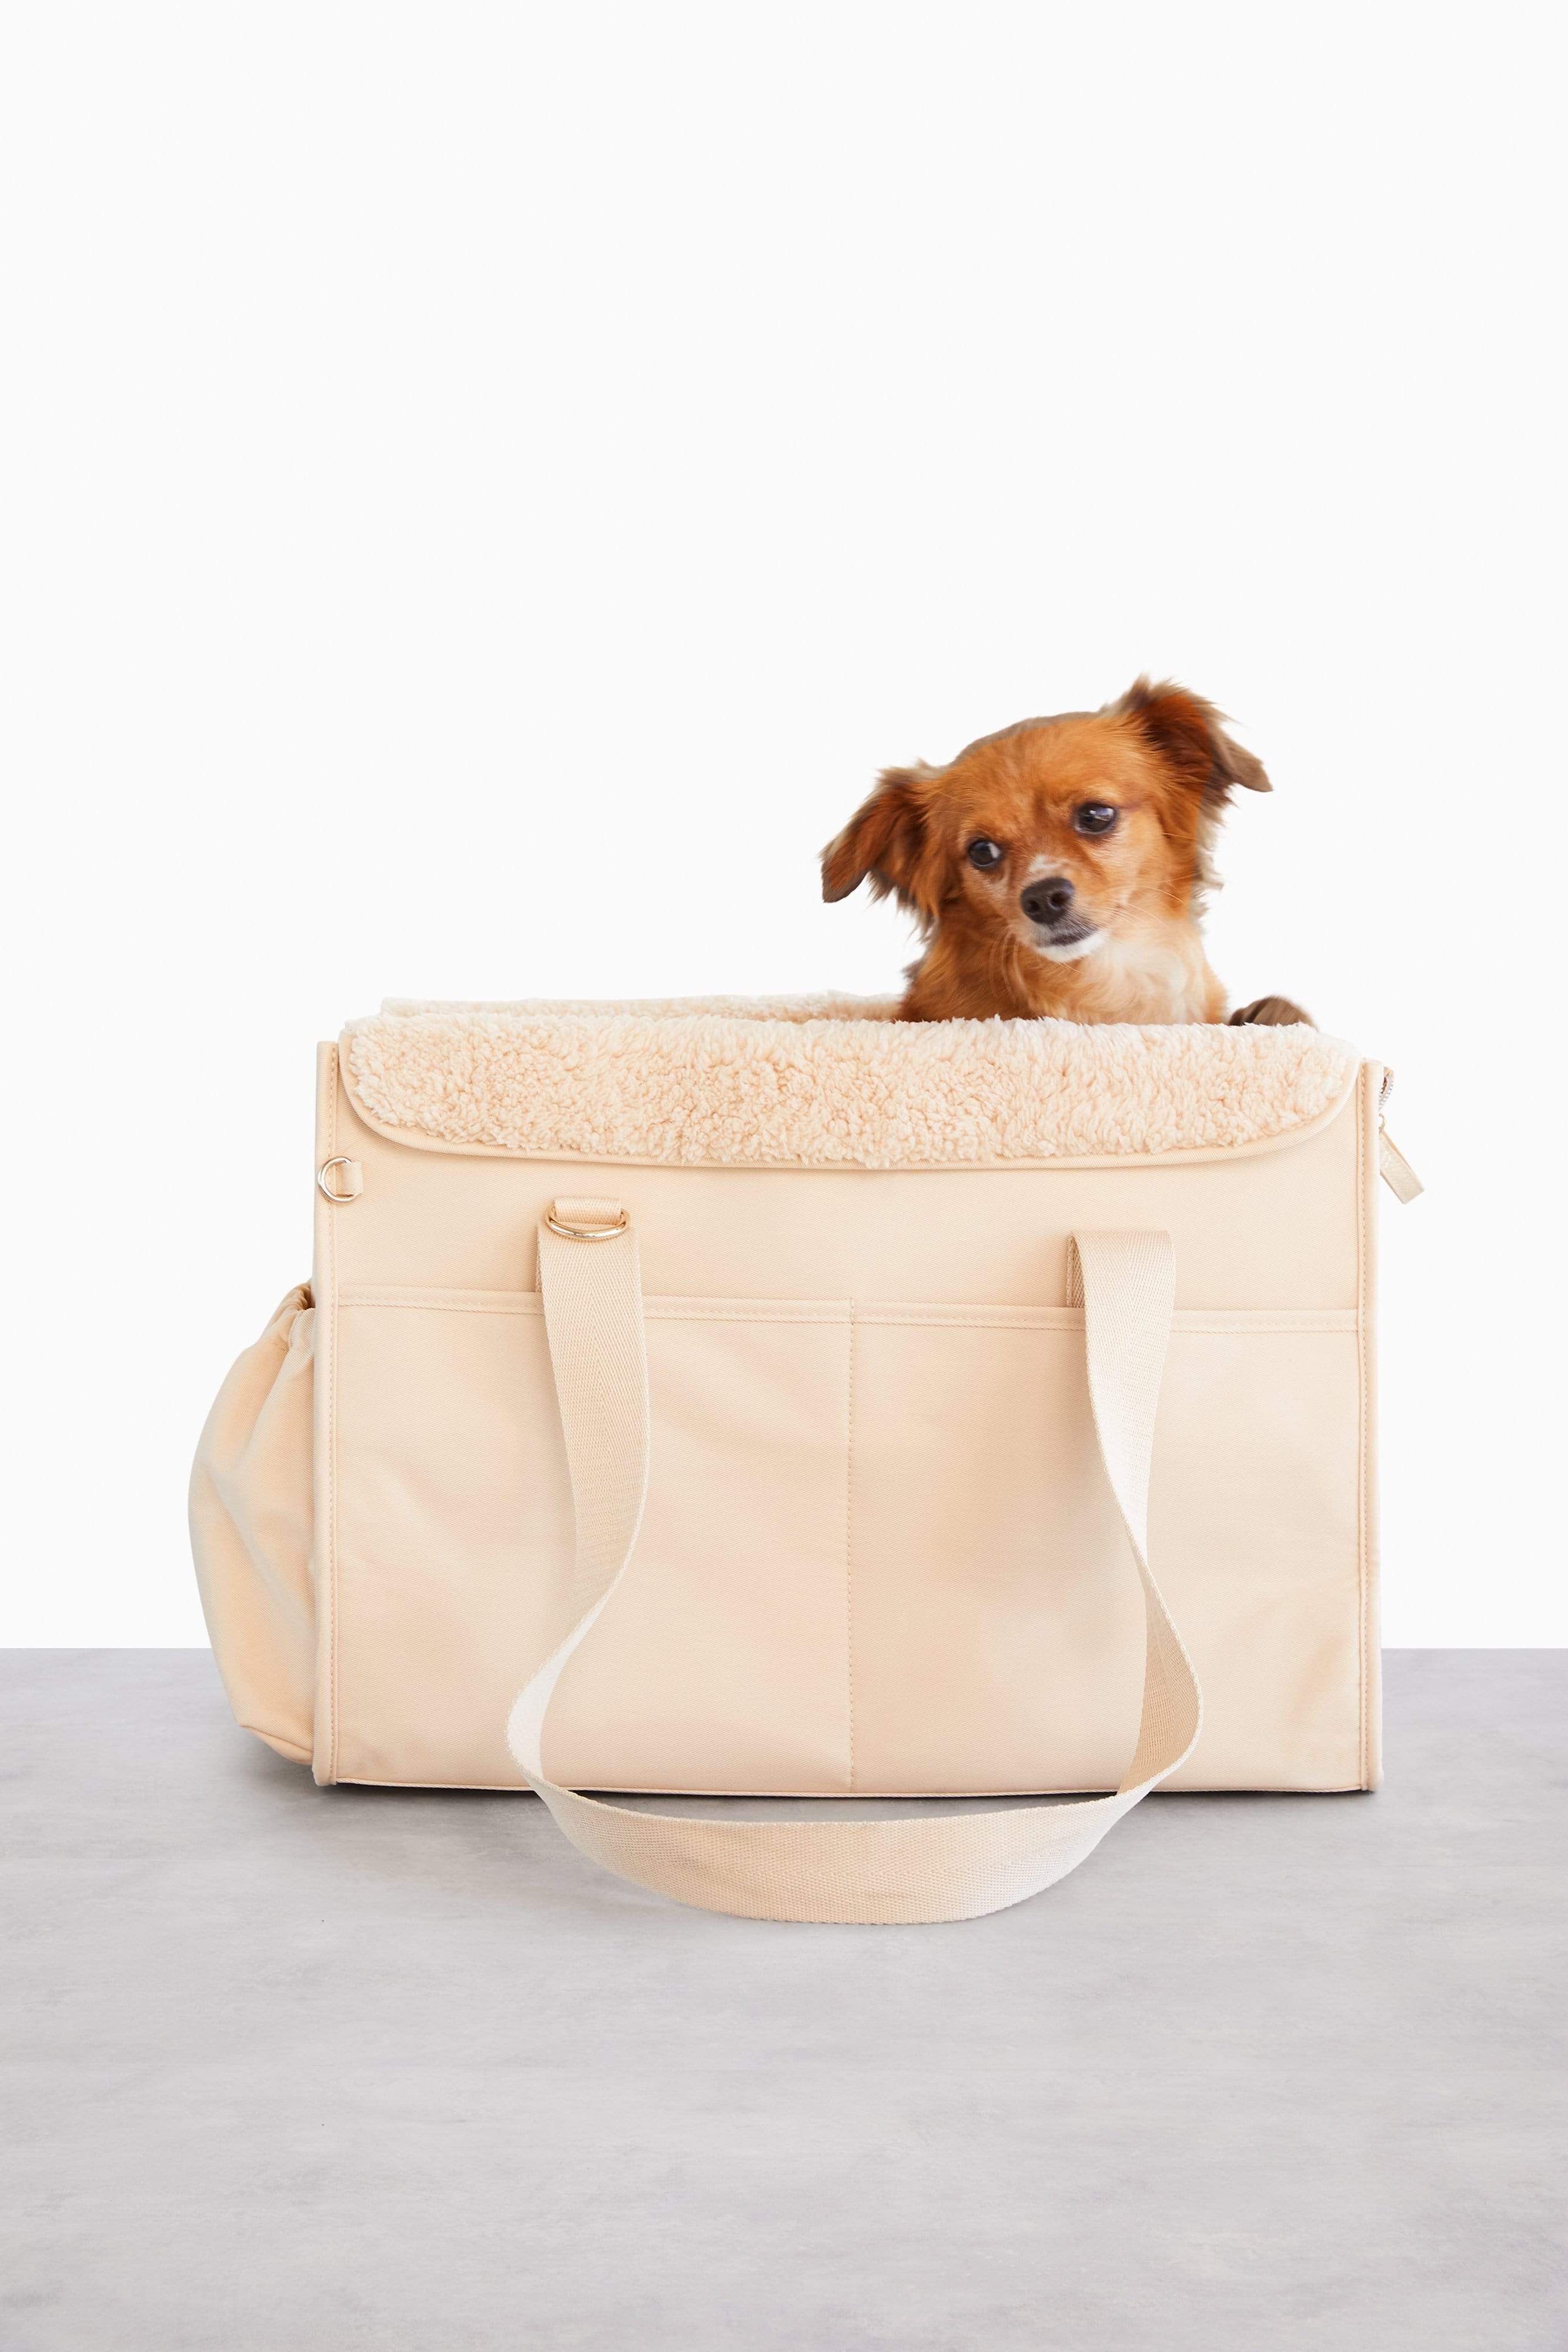 Amazon.com : Himal Outdoors Dog Backpack, Dog Hiking Backpack, Hound Saddle  Bag for Large Dog with Side Pockets & Adjustable Strap : Pet Supplies